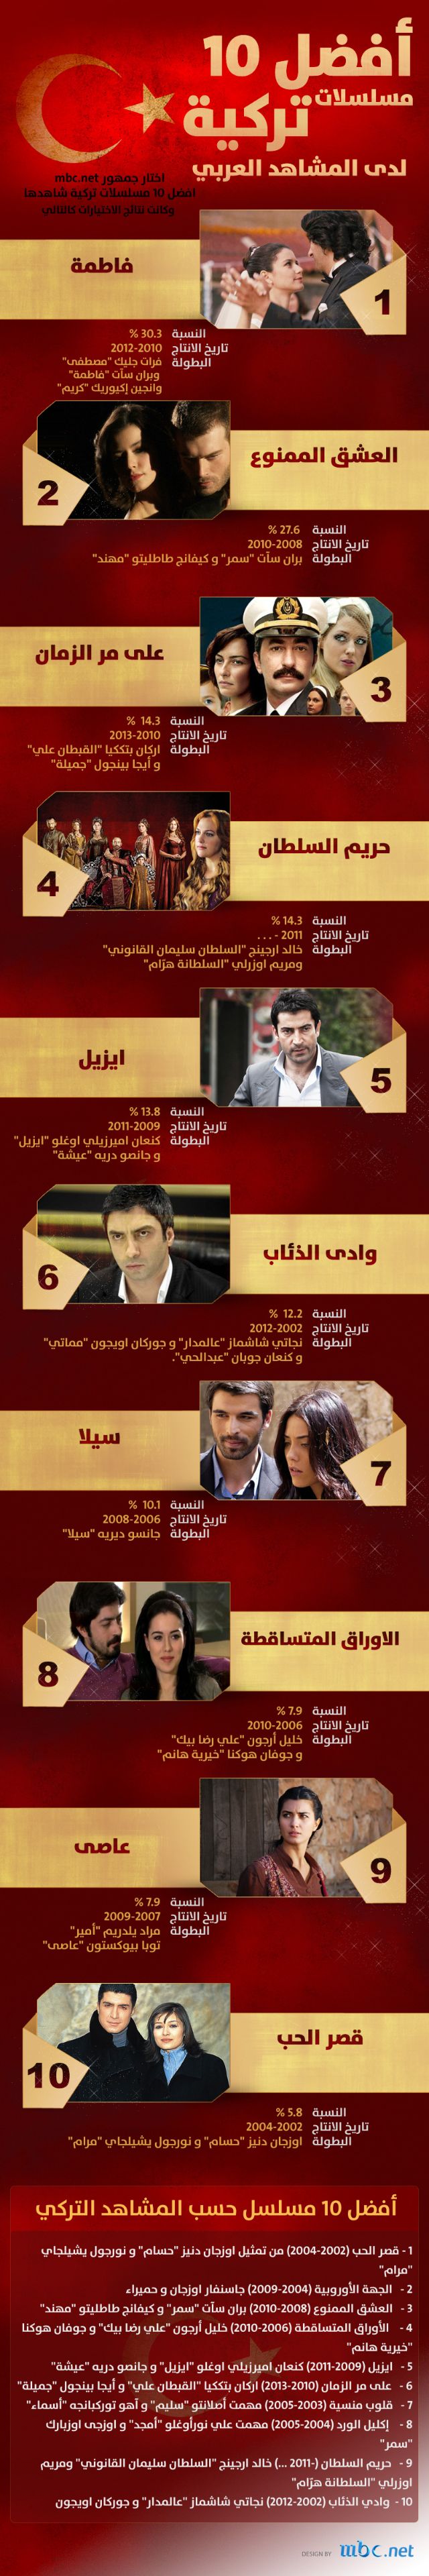 بالصور تعرف على أفضل 10 مسلسلات تركية لدى المشاهد العربي 2012